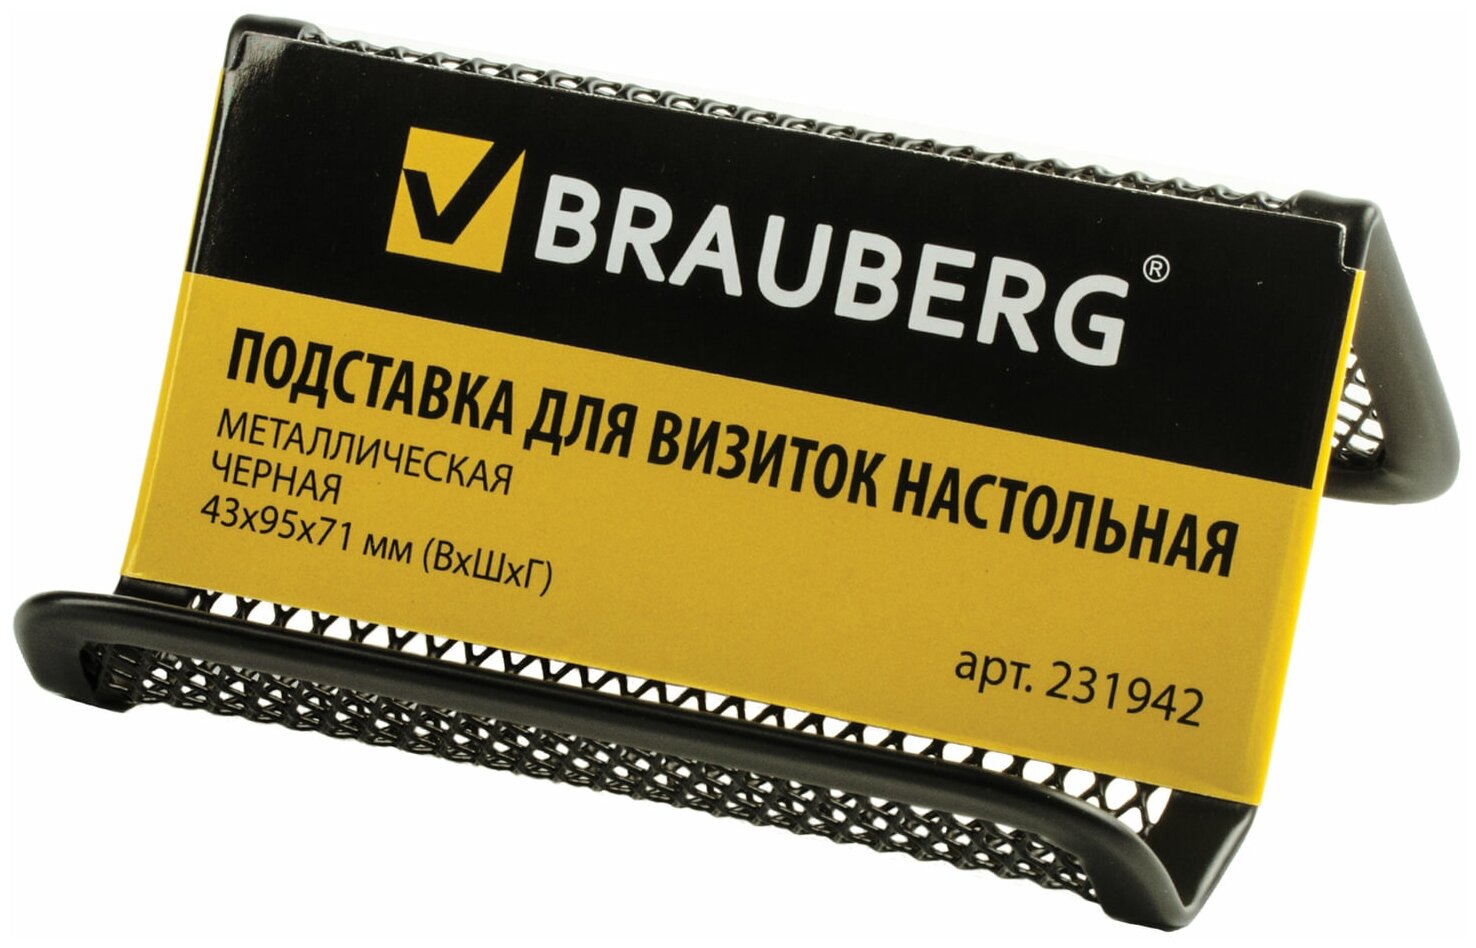 Подставка для визиток настольная BRAUBERG "Germanium", металлическая, 43х95х71 мм, черная, 231942 - фото №2